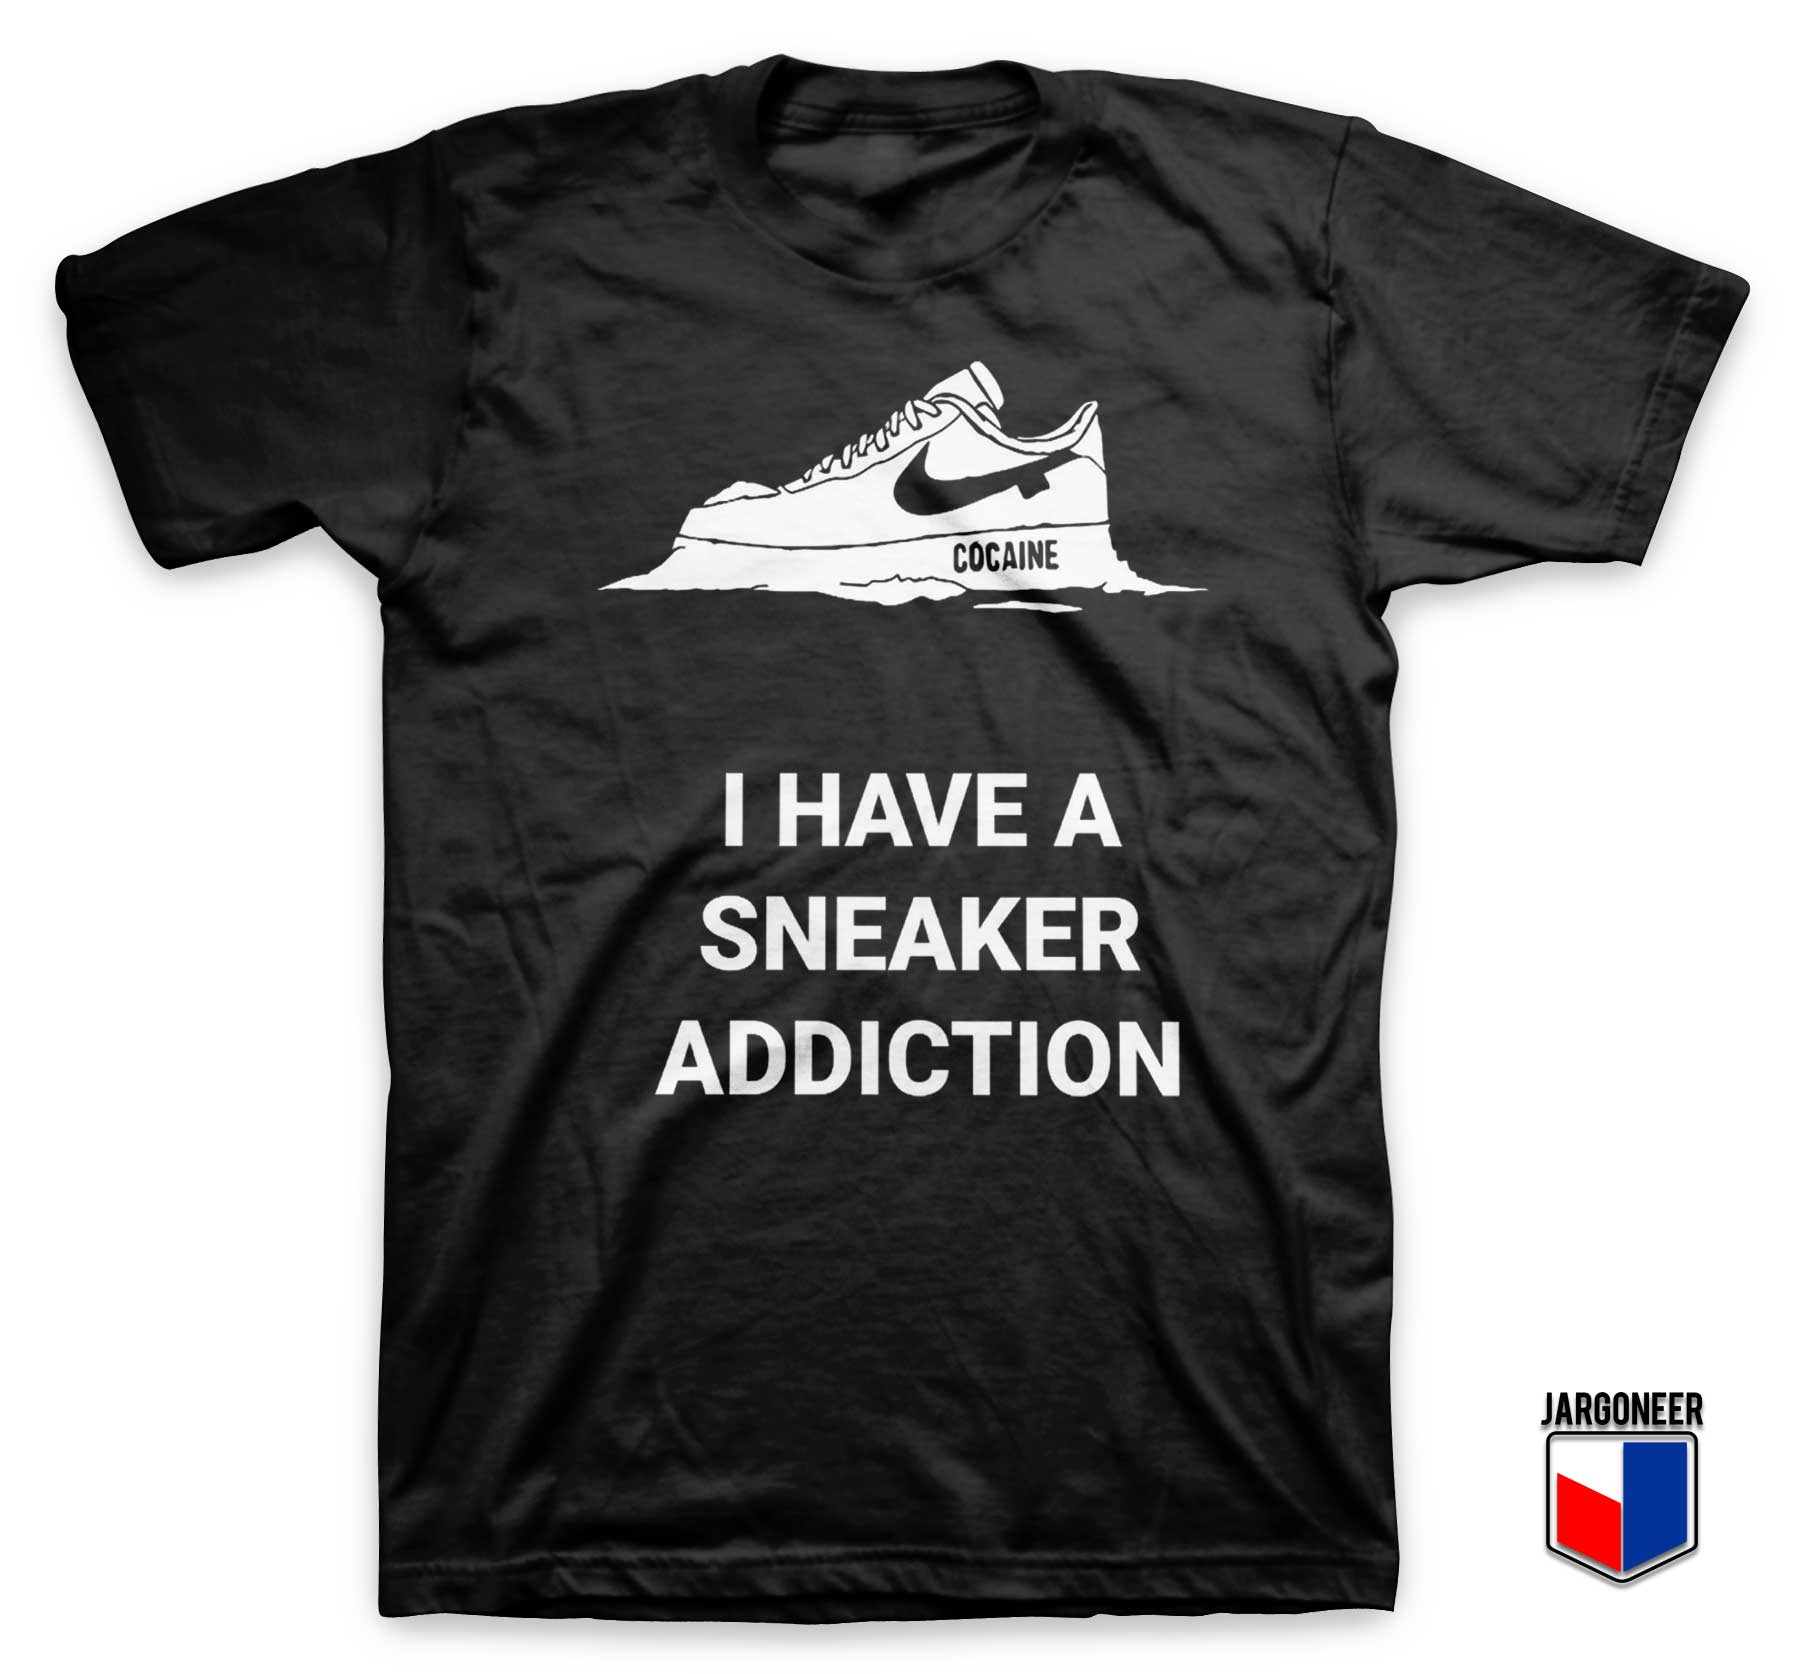 I Have A Sneaker Addiction T Shirt - Shop Unique Graphic Cool Shirt Designs